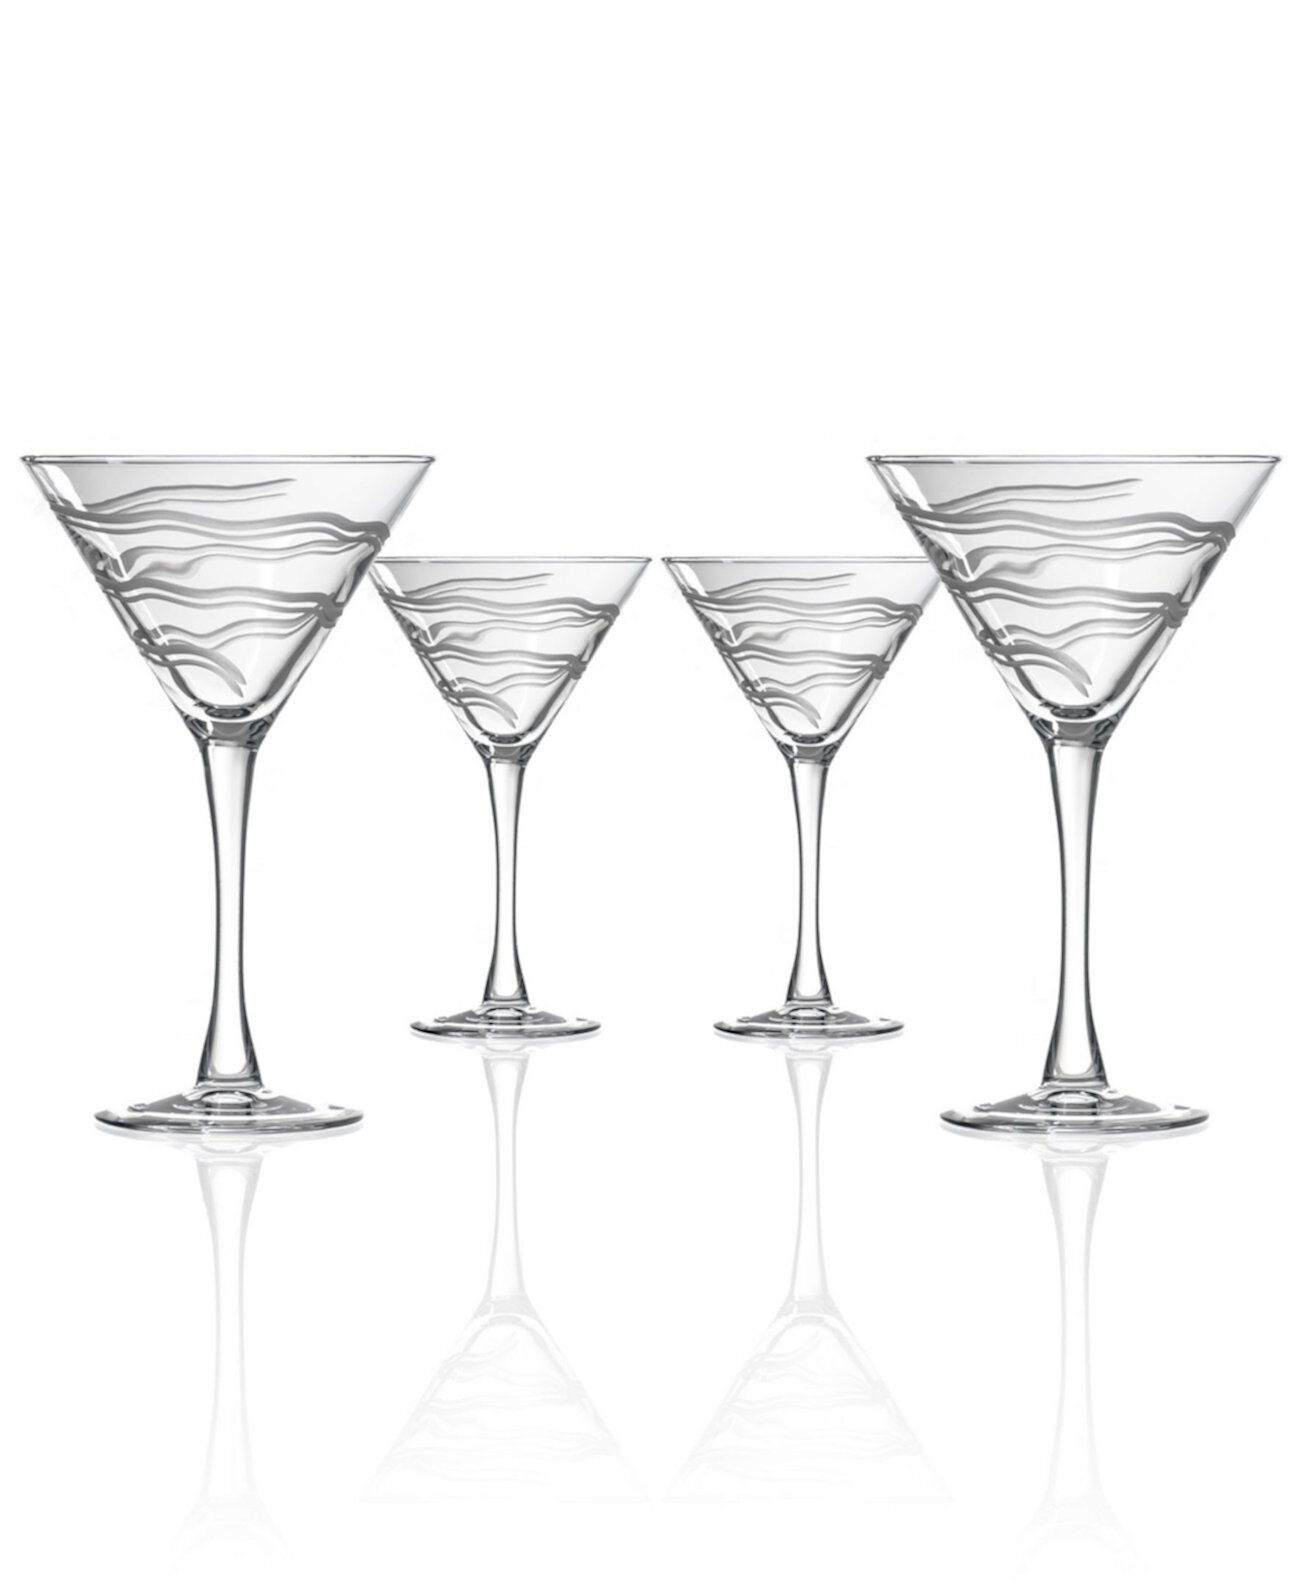 Мартини Good Vibrations 10 унций - набор из 4 стаканов Rolf Glass